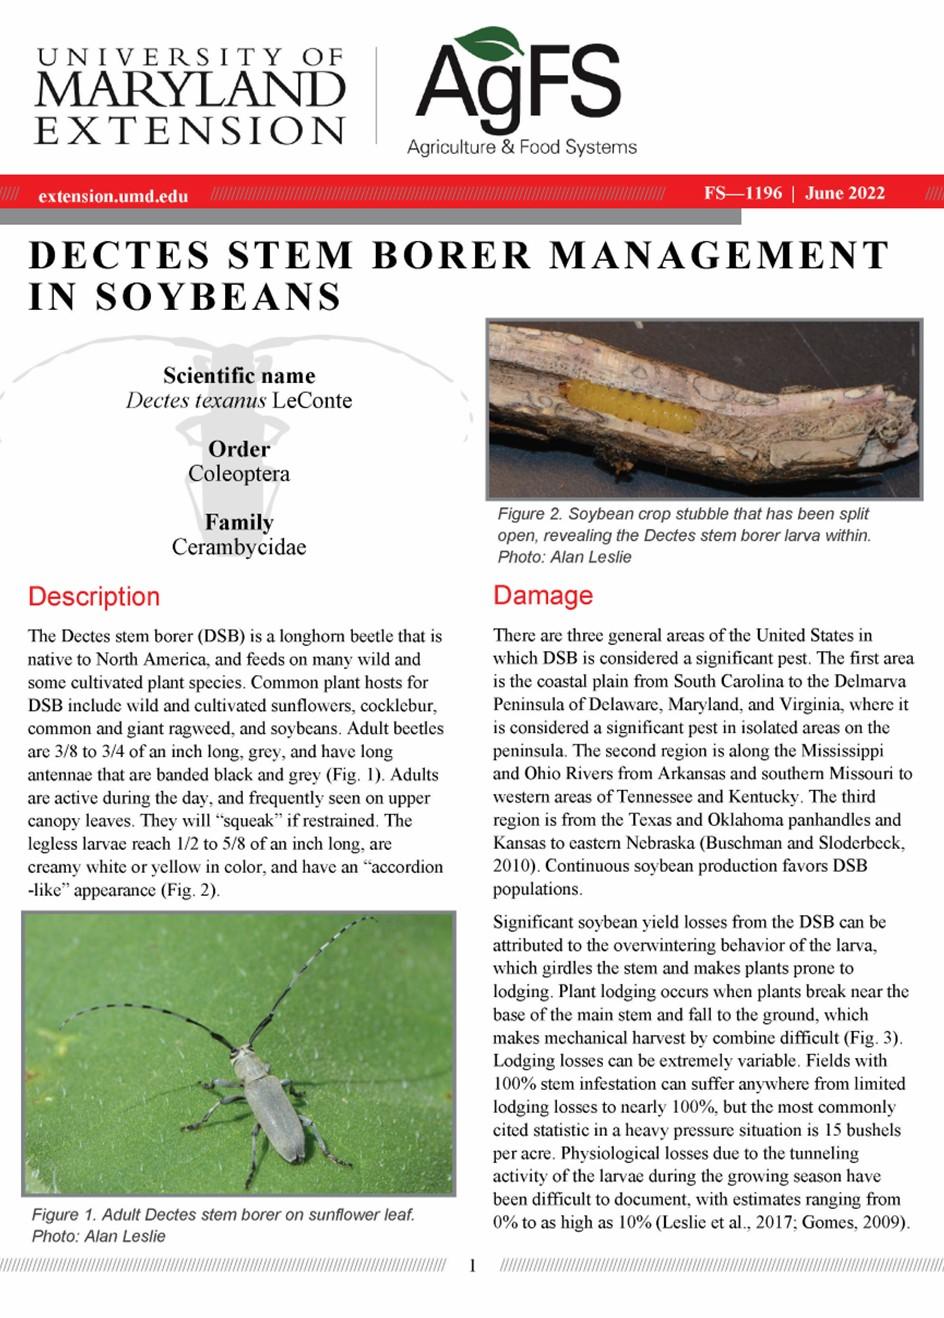 Dectes Stem Borer Management Fact Sheet FS-1196 cover page